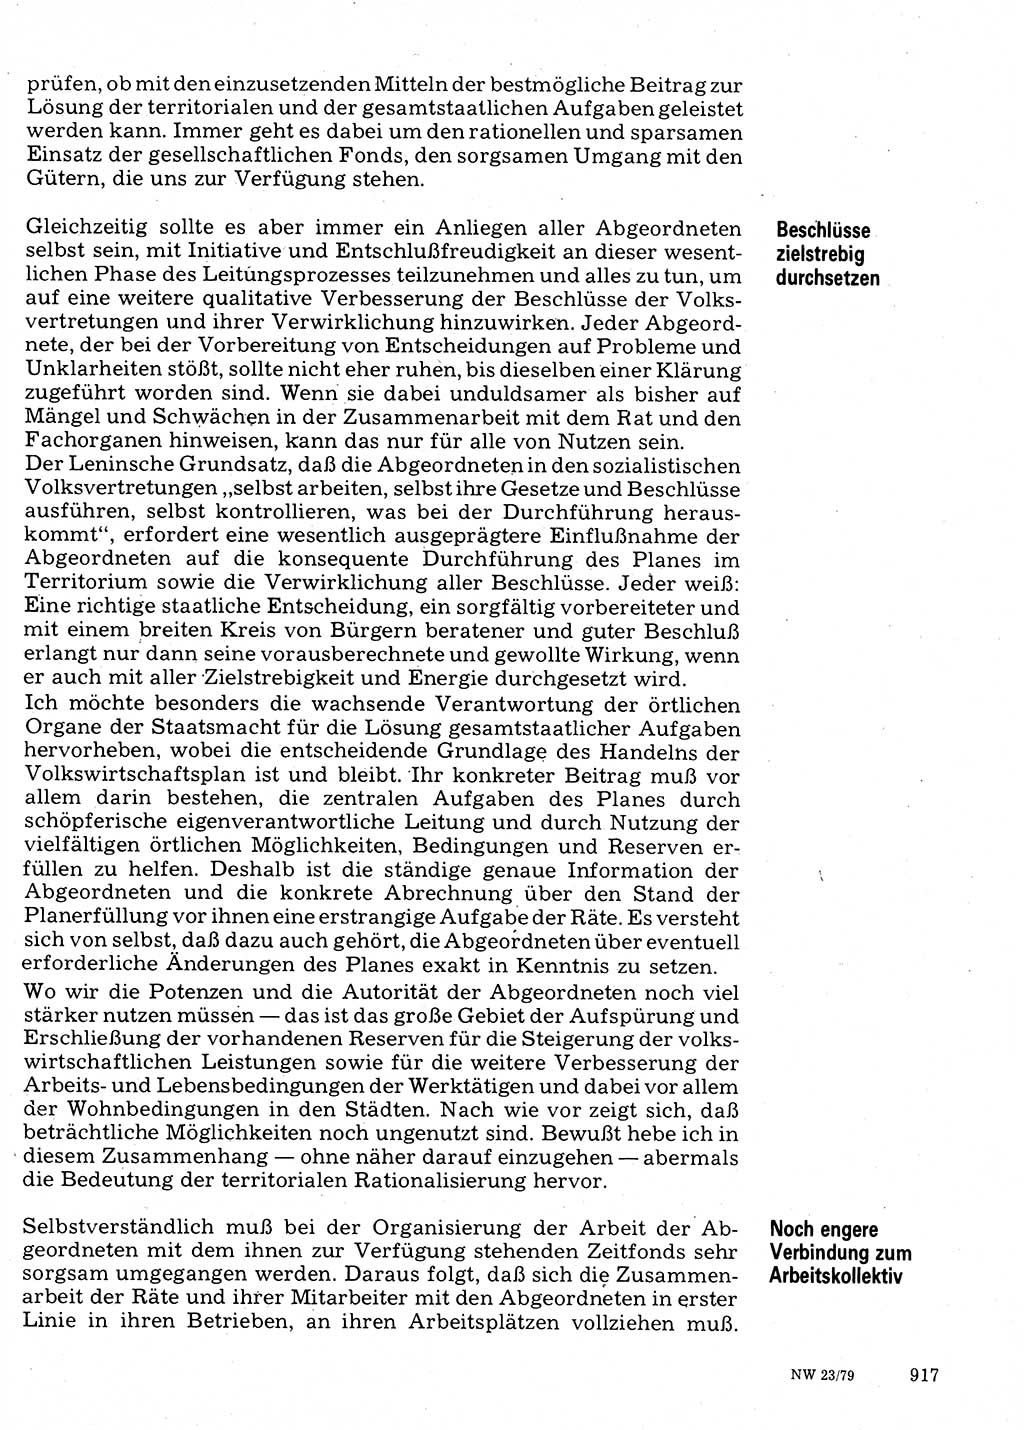 Neuer Weg (NW), Organ des Zentralkomitees (ZK) der SED (Sozialistische Einheitspartei Deutschlands) für Fragen des Parteilebens, 34. Jahrgang [Deutsche Demokratische Republik (DDR)] 1979, Seite 917 (NW ZK SED DDR 1979, S. 917)